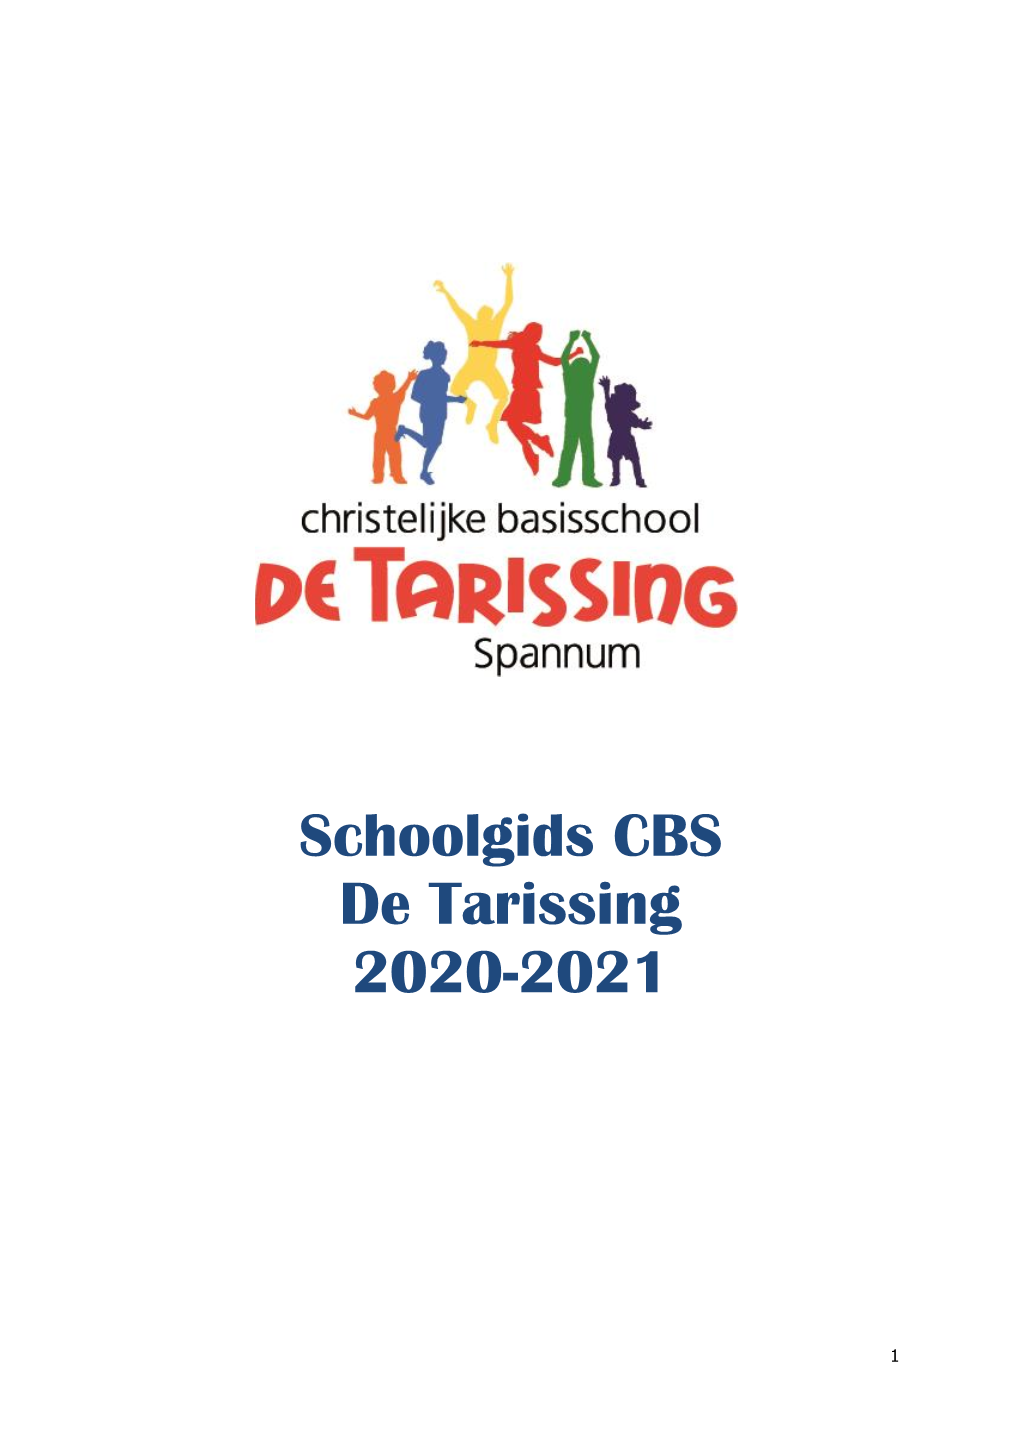 Schoolgids CBS De Tarissing 2020-2021